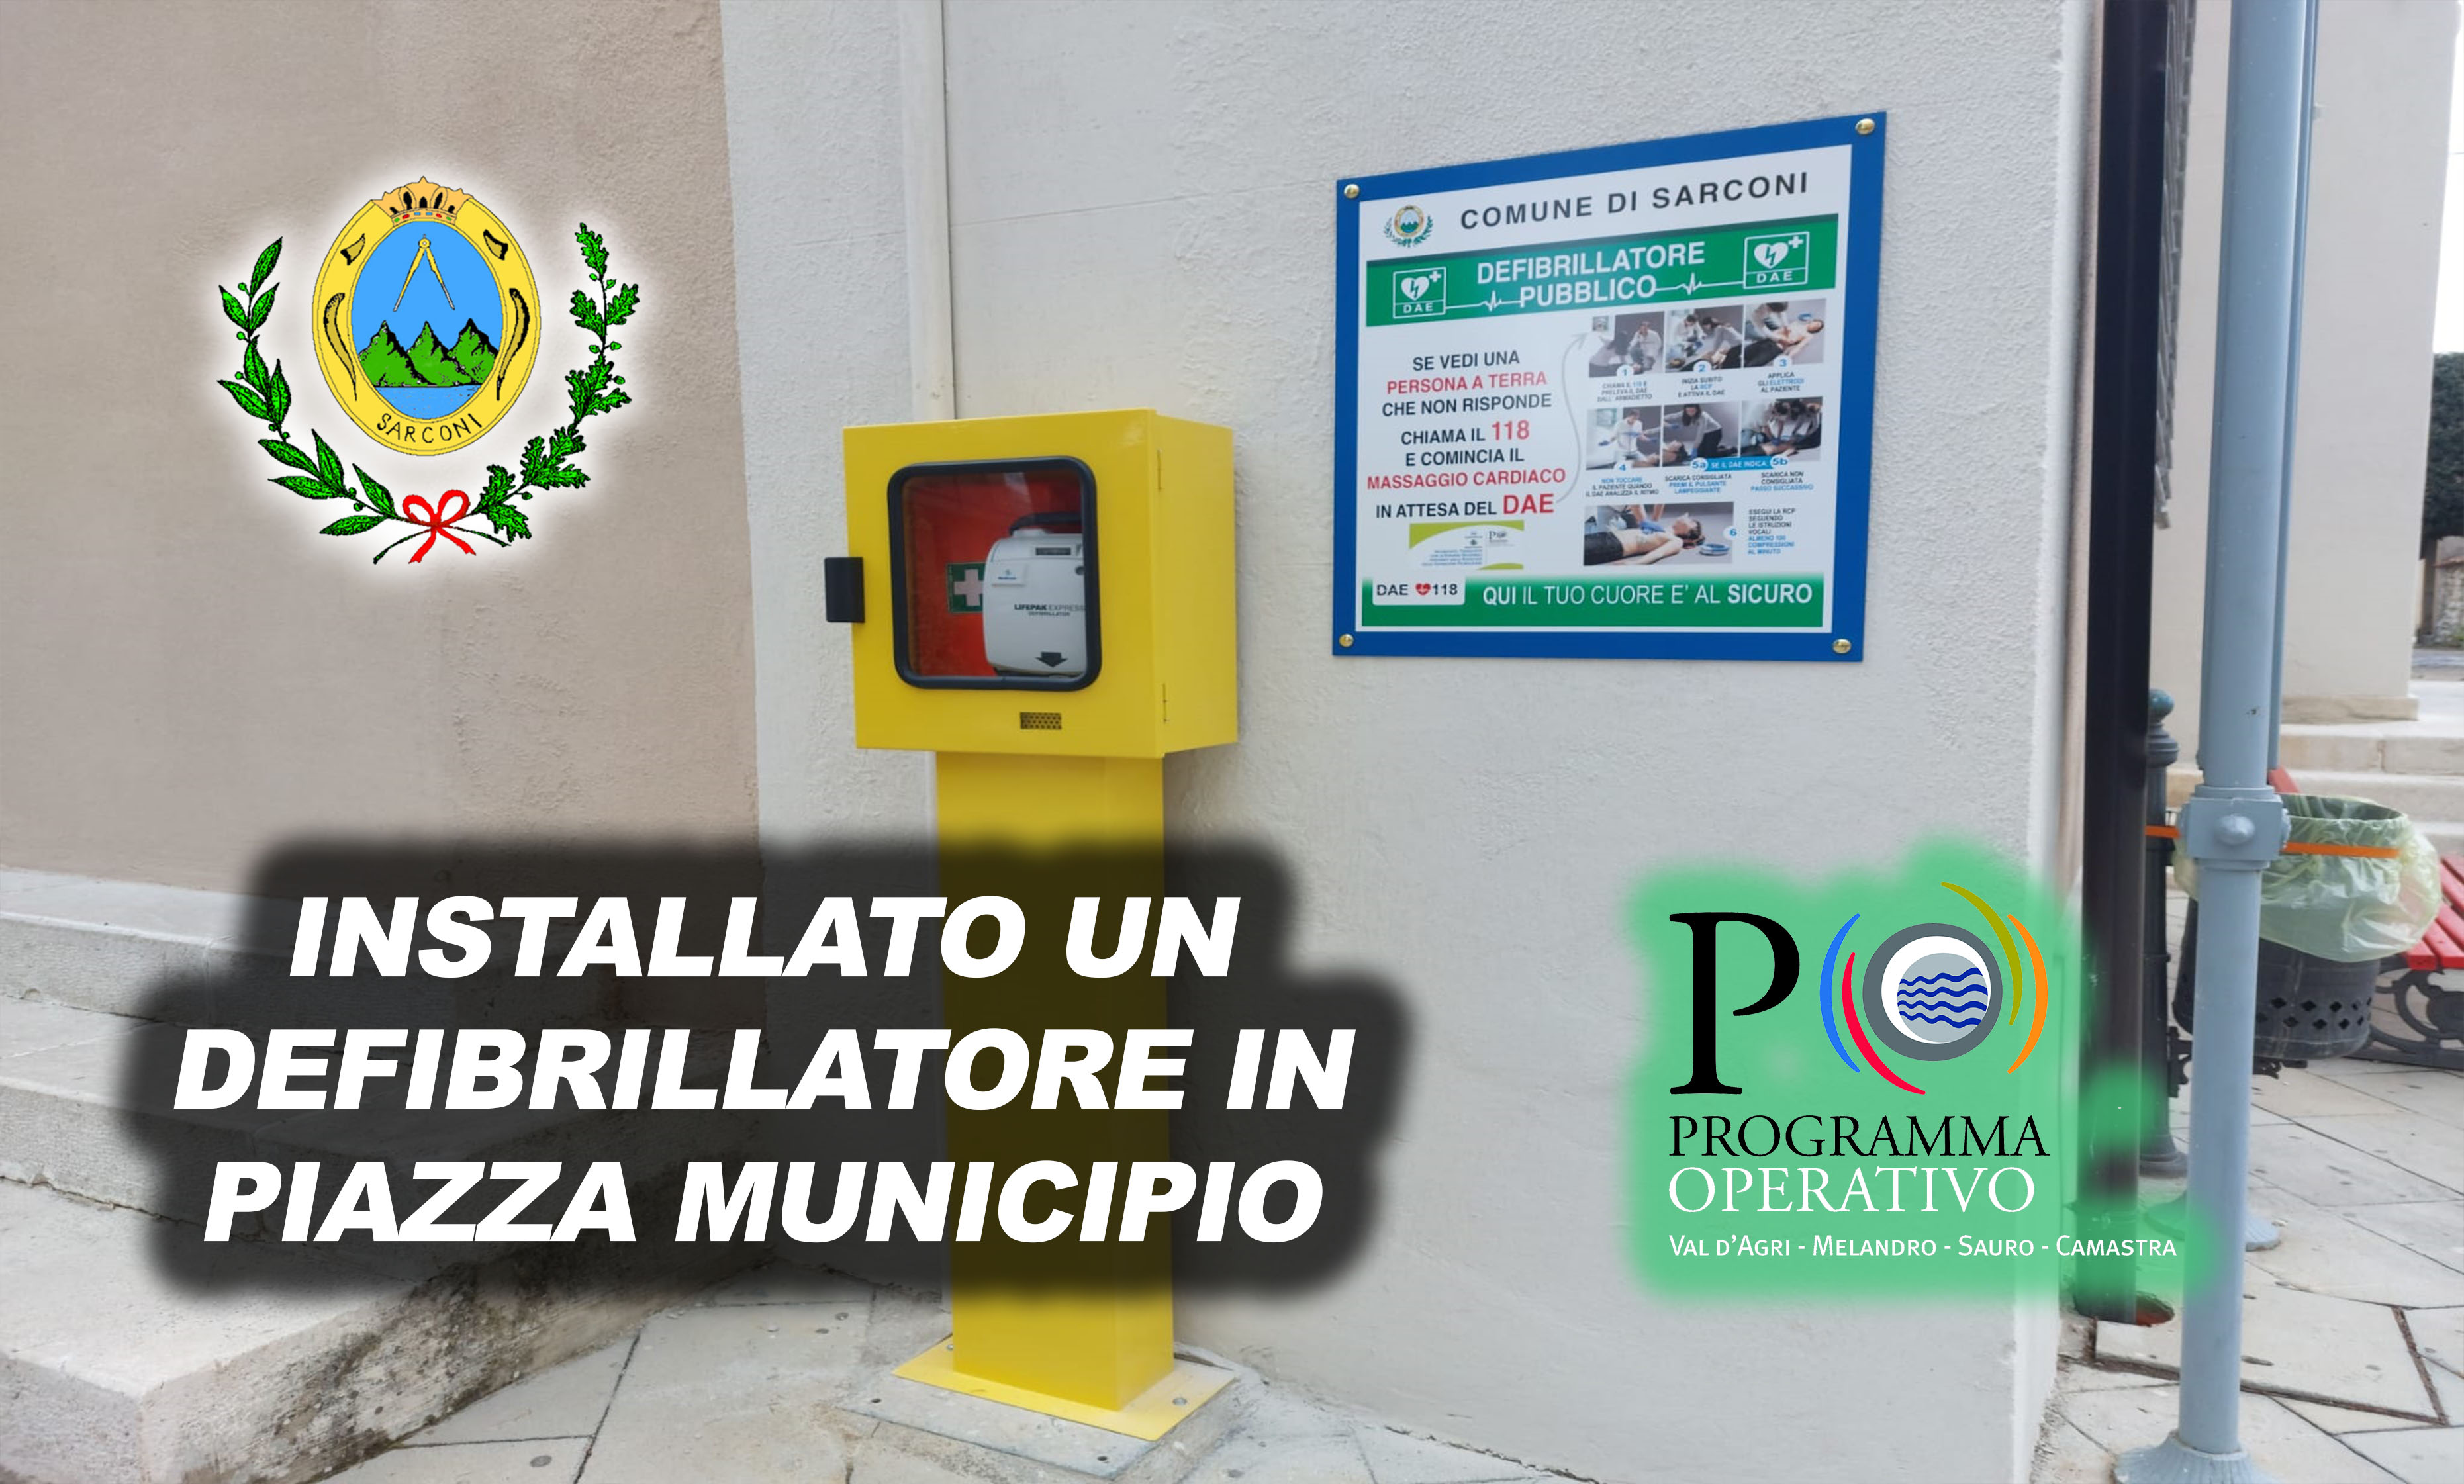 Installato un defibrillatore pubblico in piazza Municipio